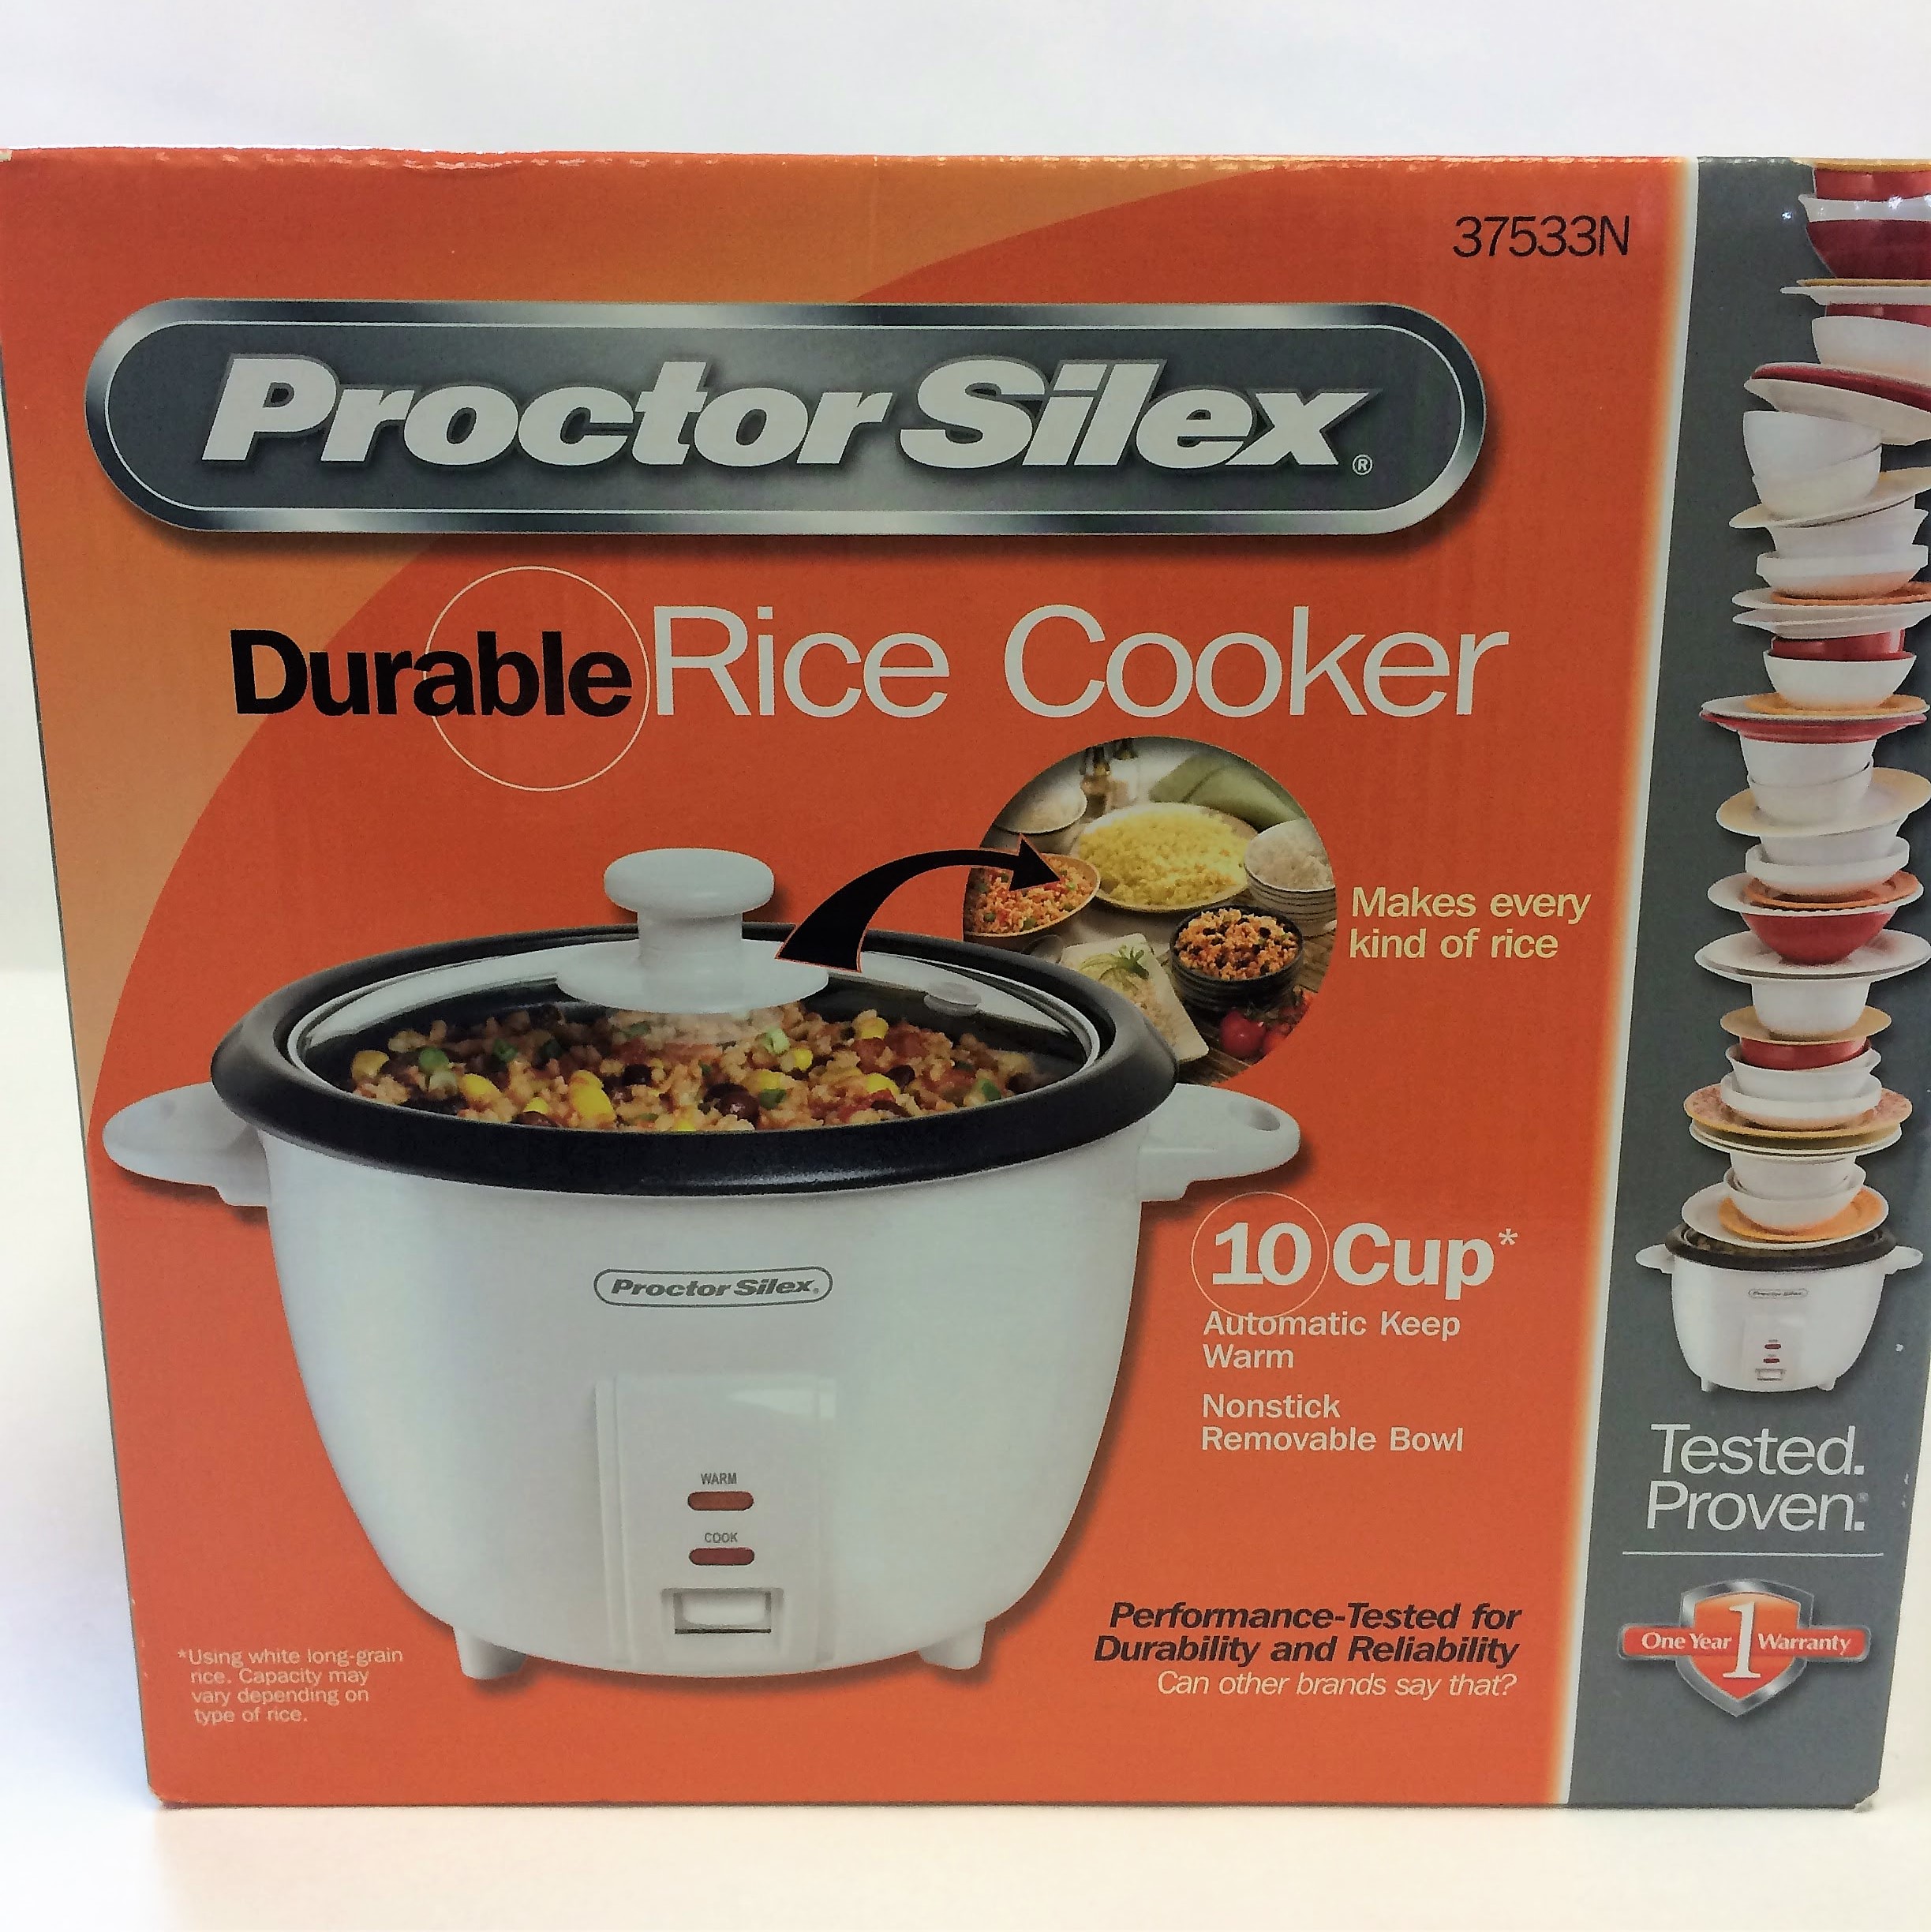 https://www.bgcuc.org/wp-content/uploads/2018/04/Proctor-Silex-Rice-Cooker-Tier-1.jpg